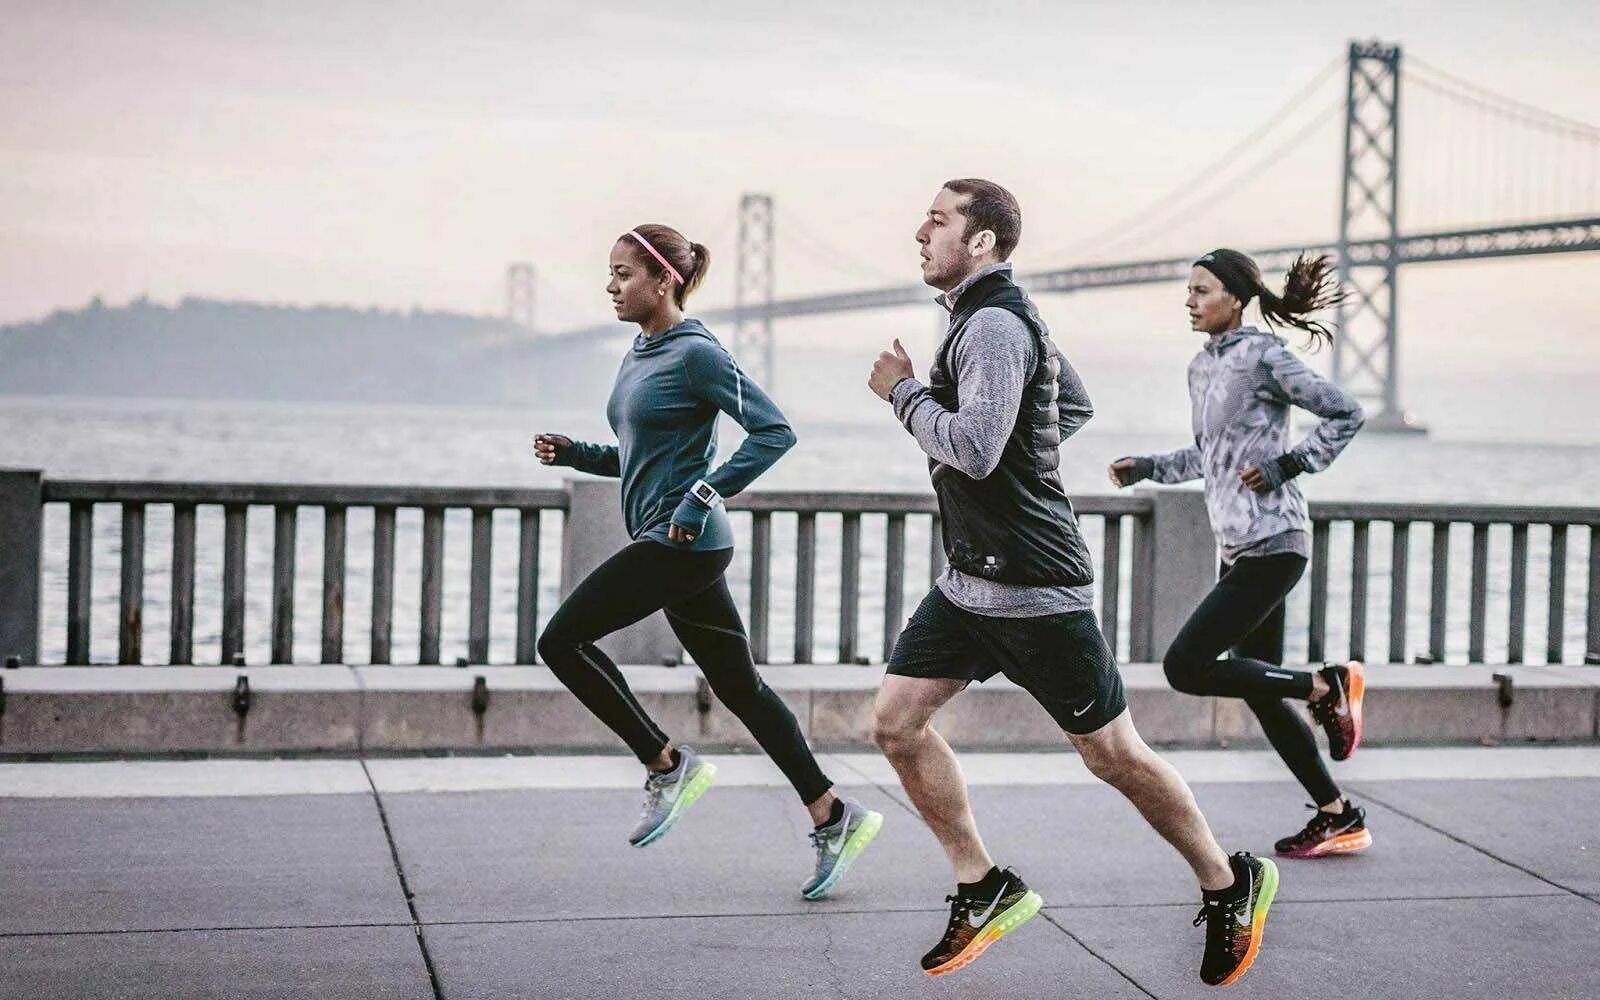 Спортсмен будет бежать. Nike Running. Nike Running бег. Занятие спортом. Фотосессия в спортивном стиле.